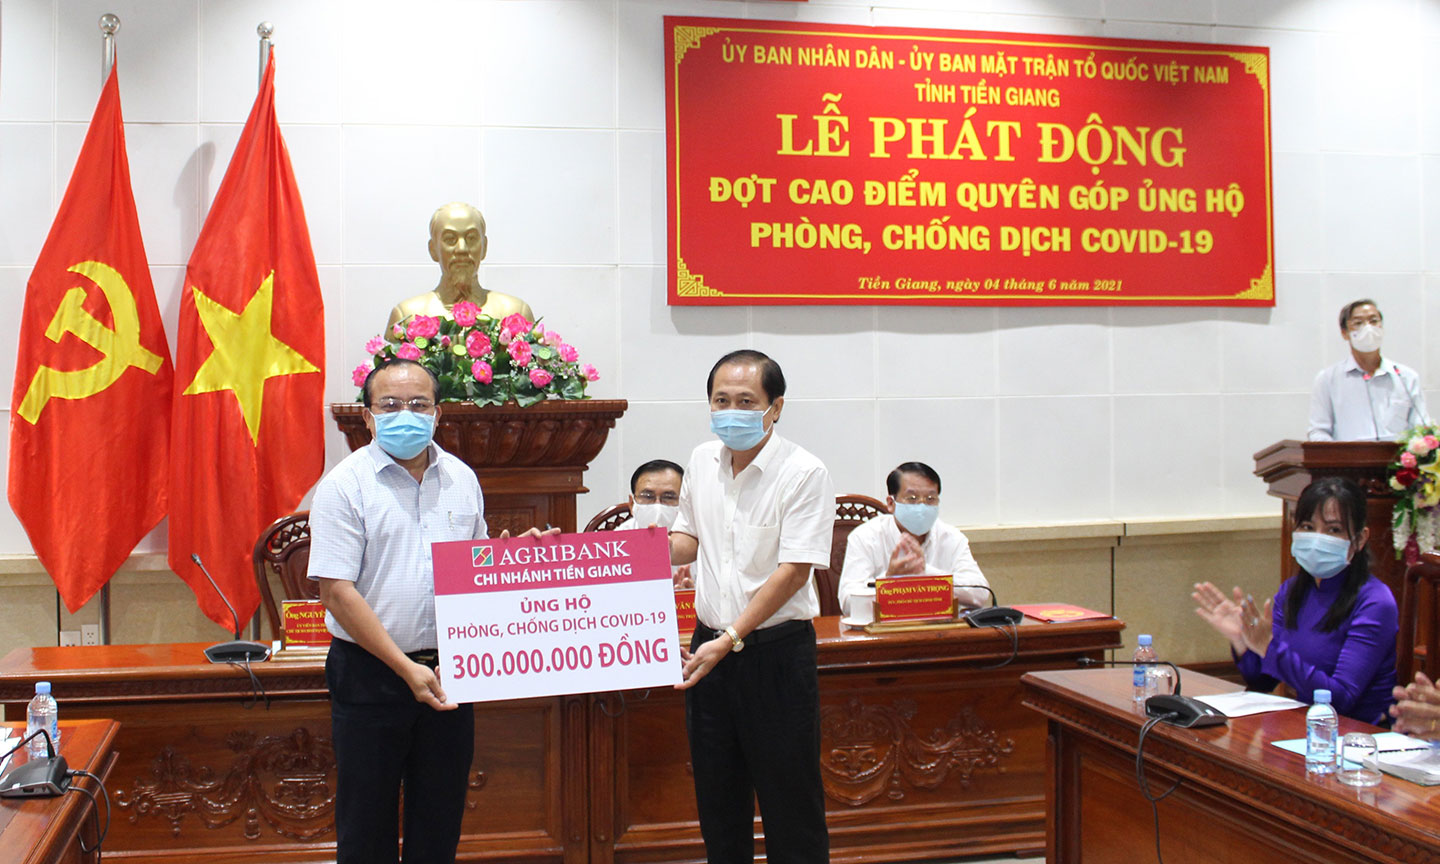 Giám đốc Agribank Tiền Giang Nguyễn Văn Huỳnh (bên phải) trao biển tượng trưng 300 triệu cho Ông Nguyễn Chí Trung, Chủ tịch UBMTTQVN Tỉnh Tiền Giang.